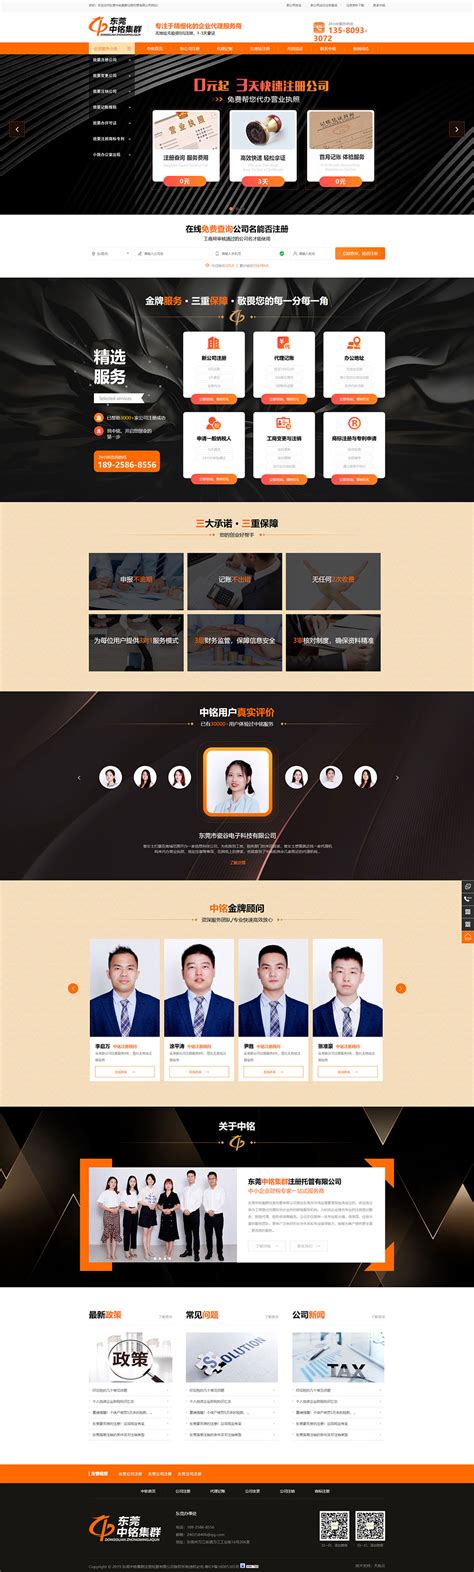 东莞网站设计公司